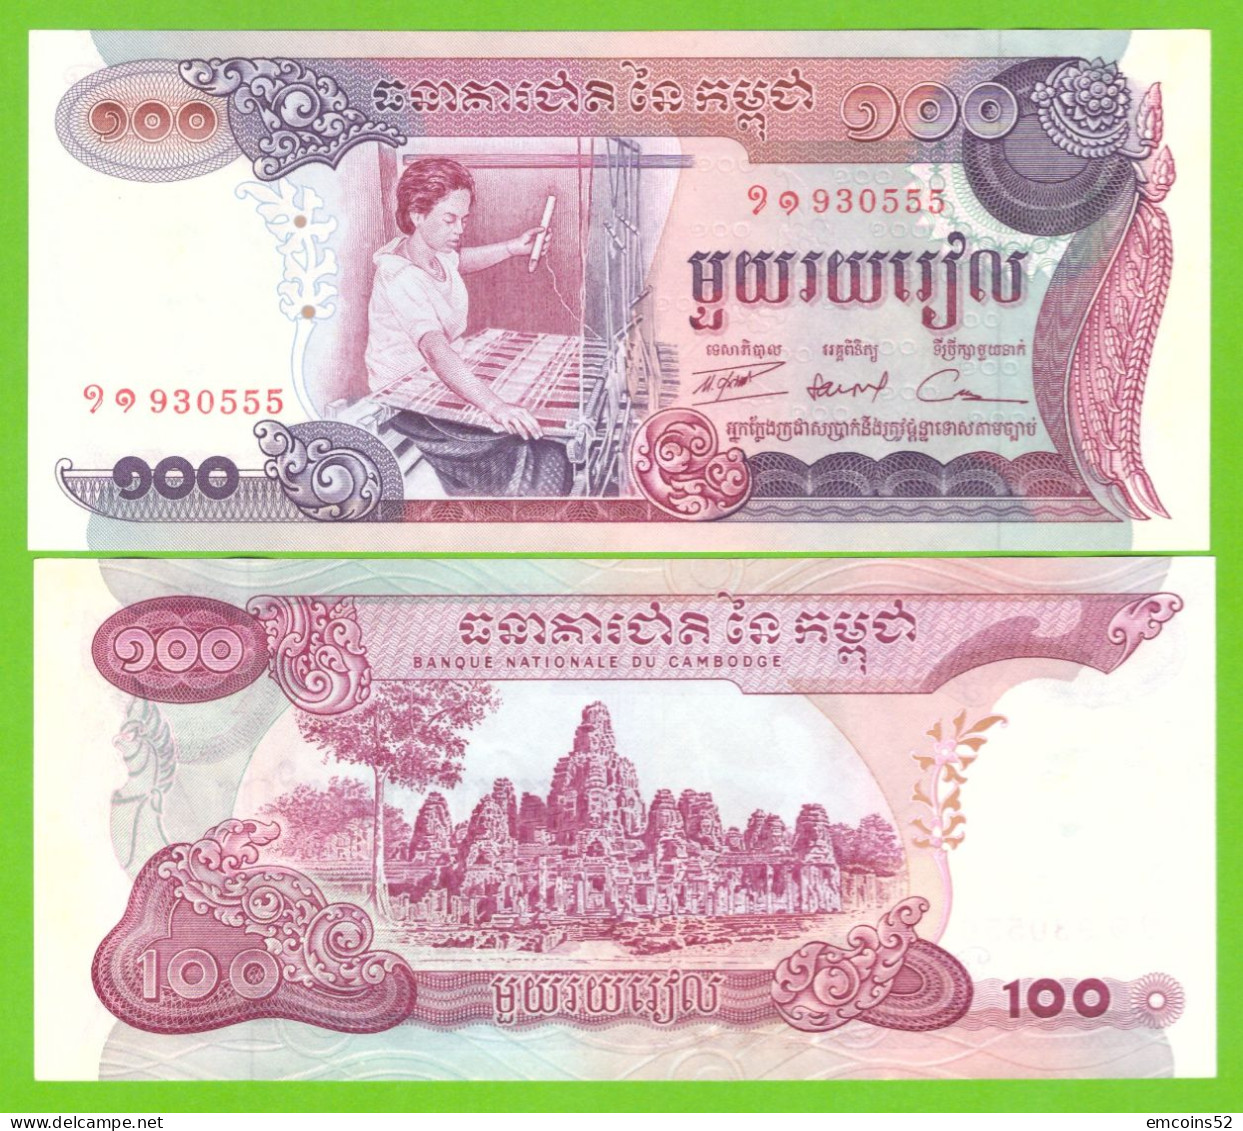 CAMBODIA  100 RIELS 1973 P-15a  UNC - Cambodge